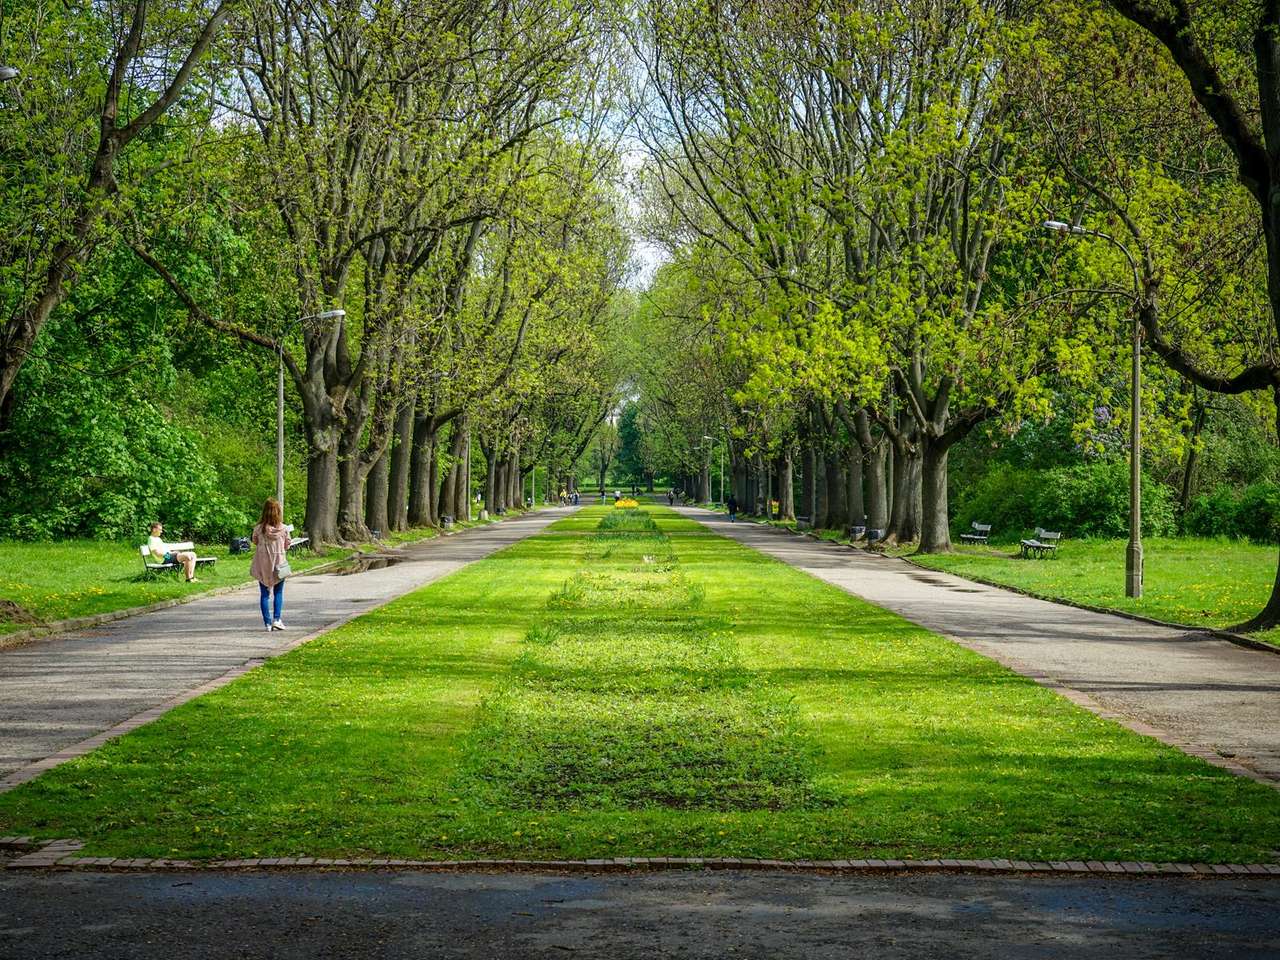 Ein schöner grüner Park dort drüben Online-Puzzle vom Foto